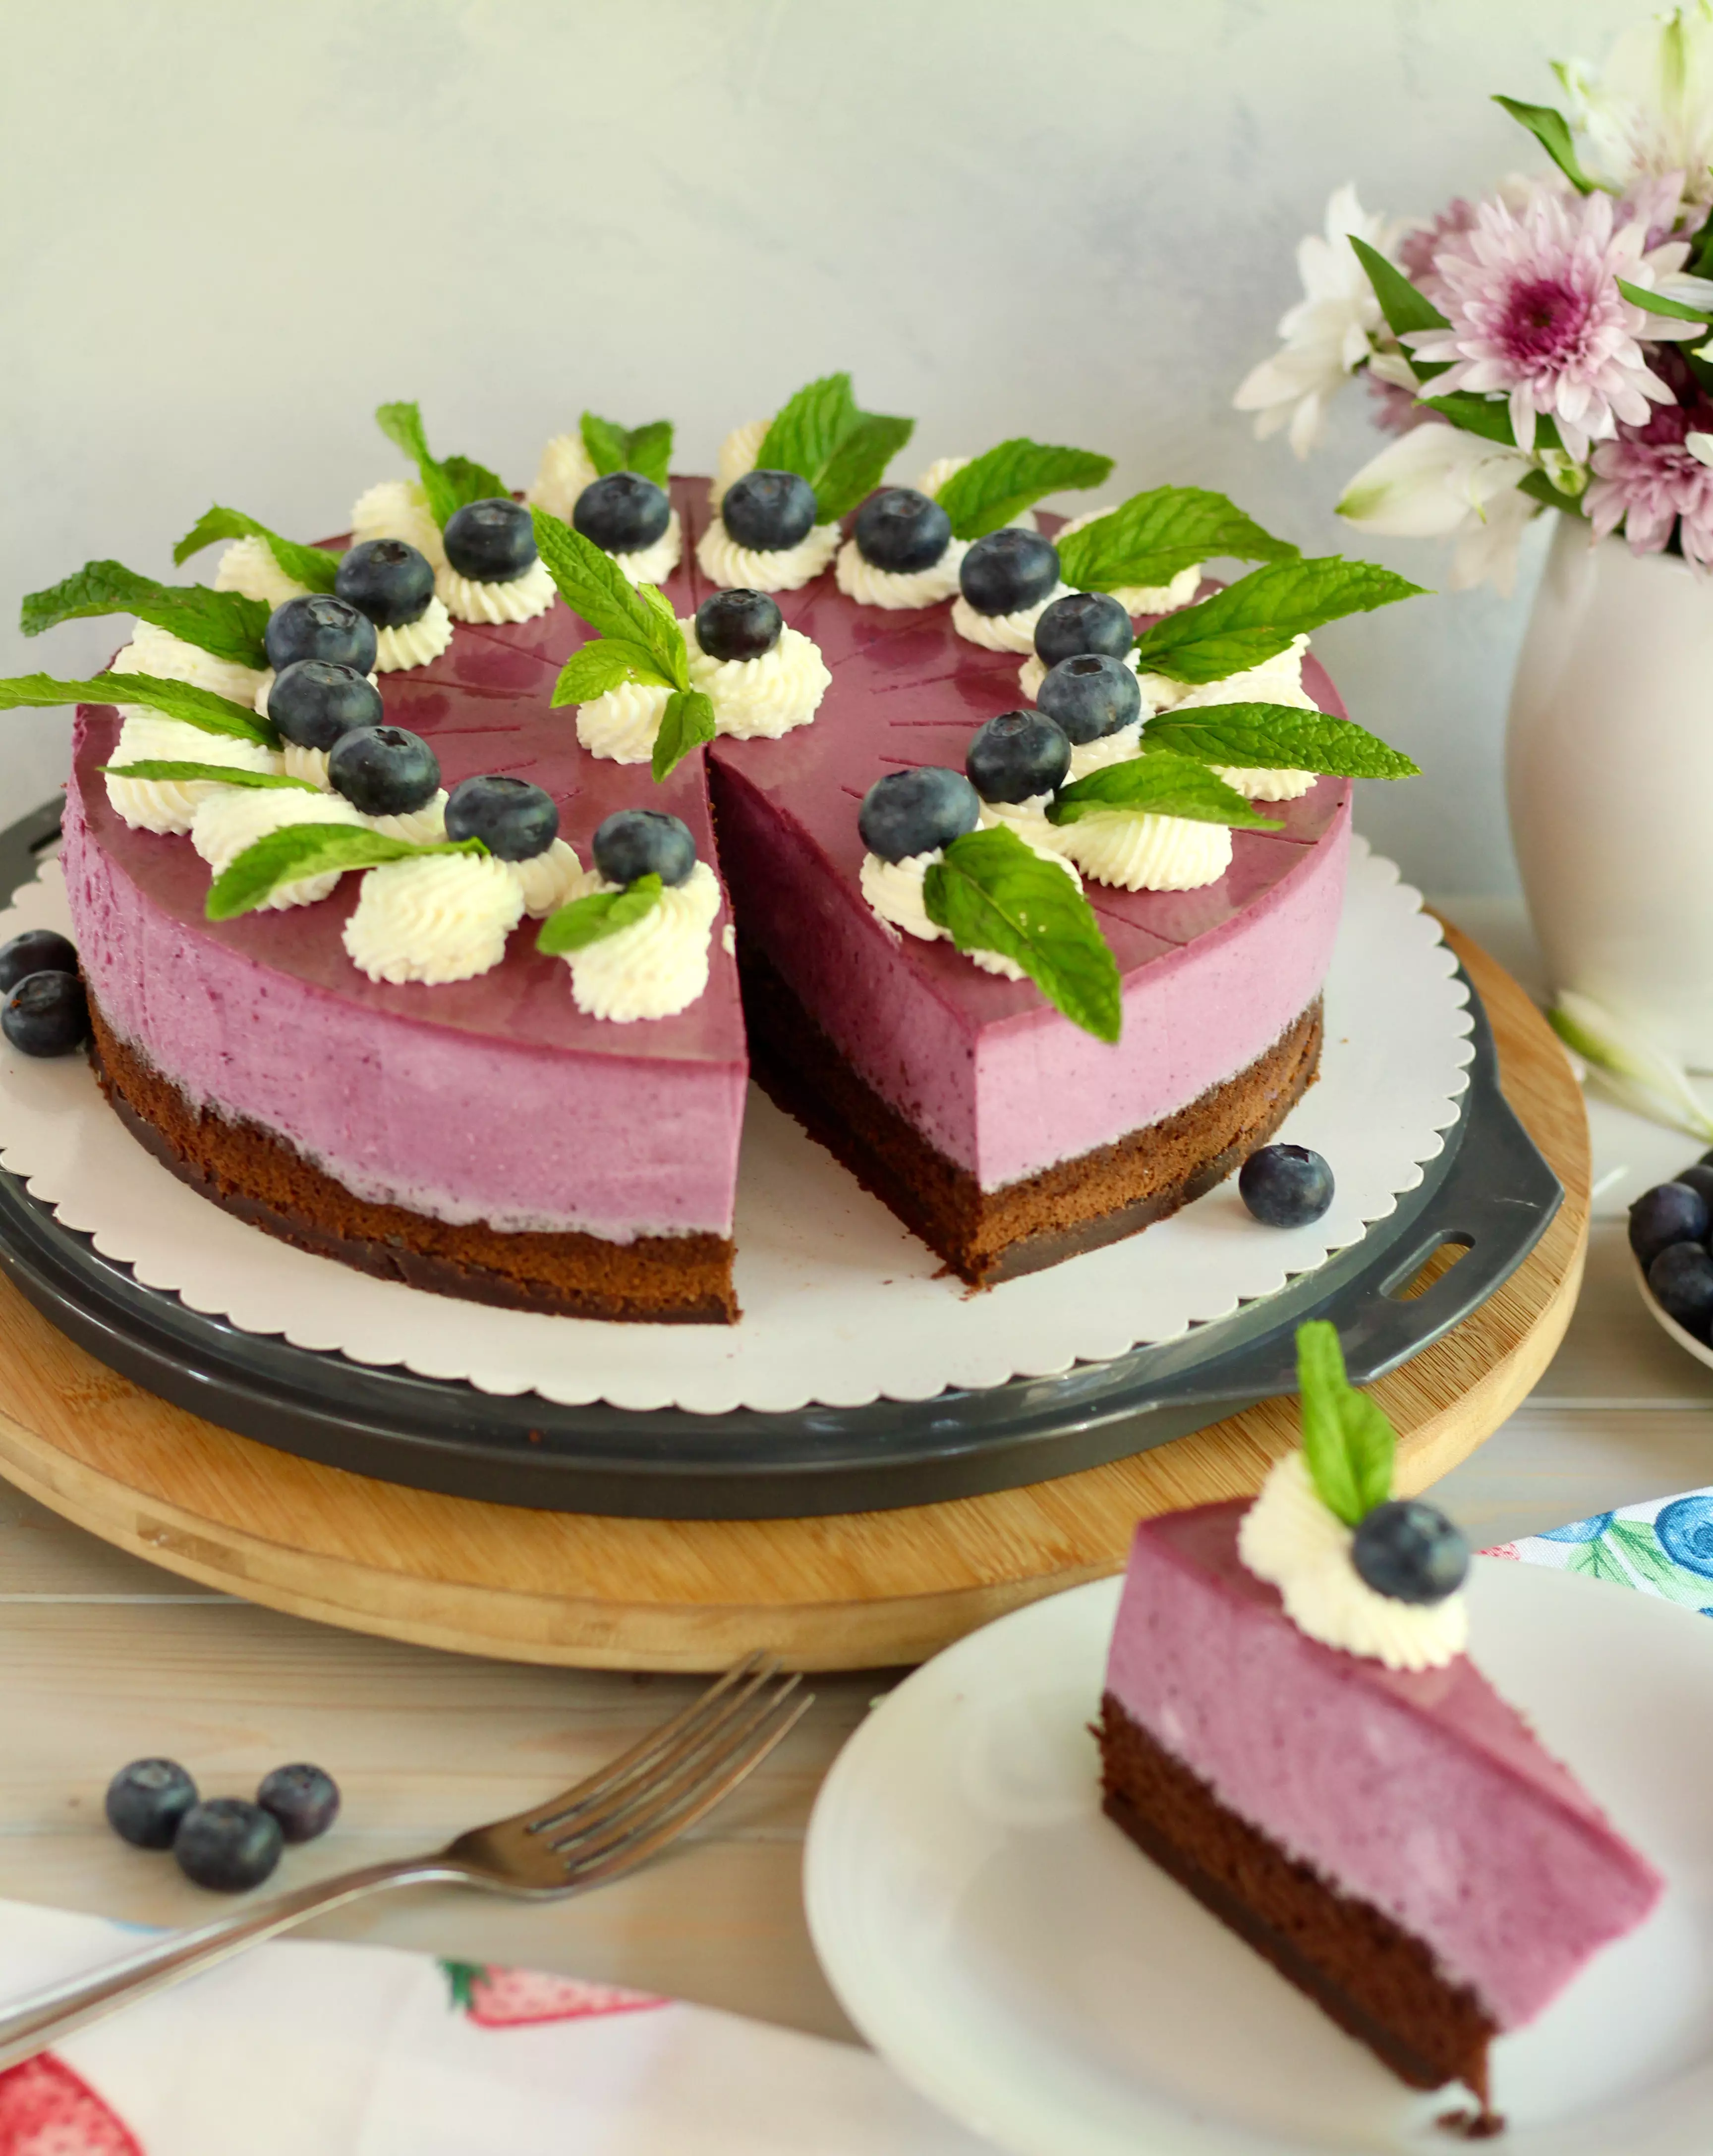 Erfrischende Blaubeer-Buttermilch-Torte ohne oder mit Backen | Rezept und Video von Sugarprincess